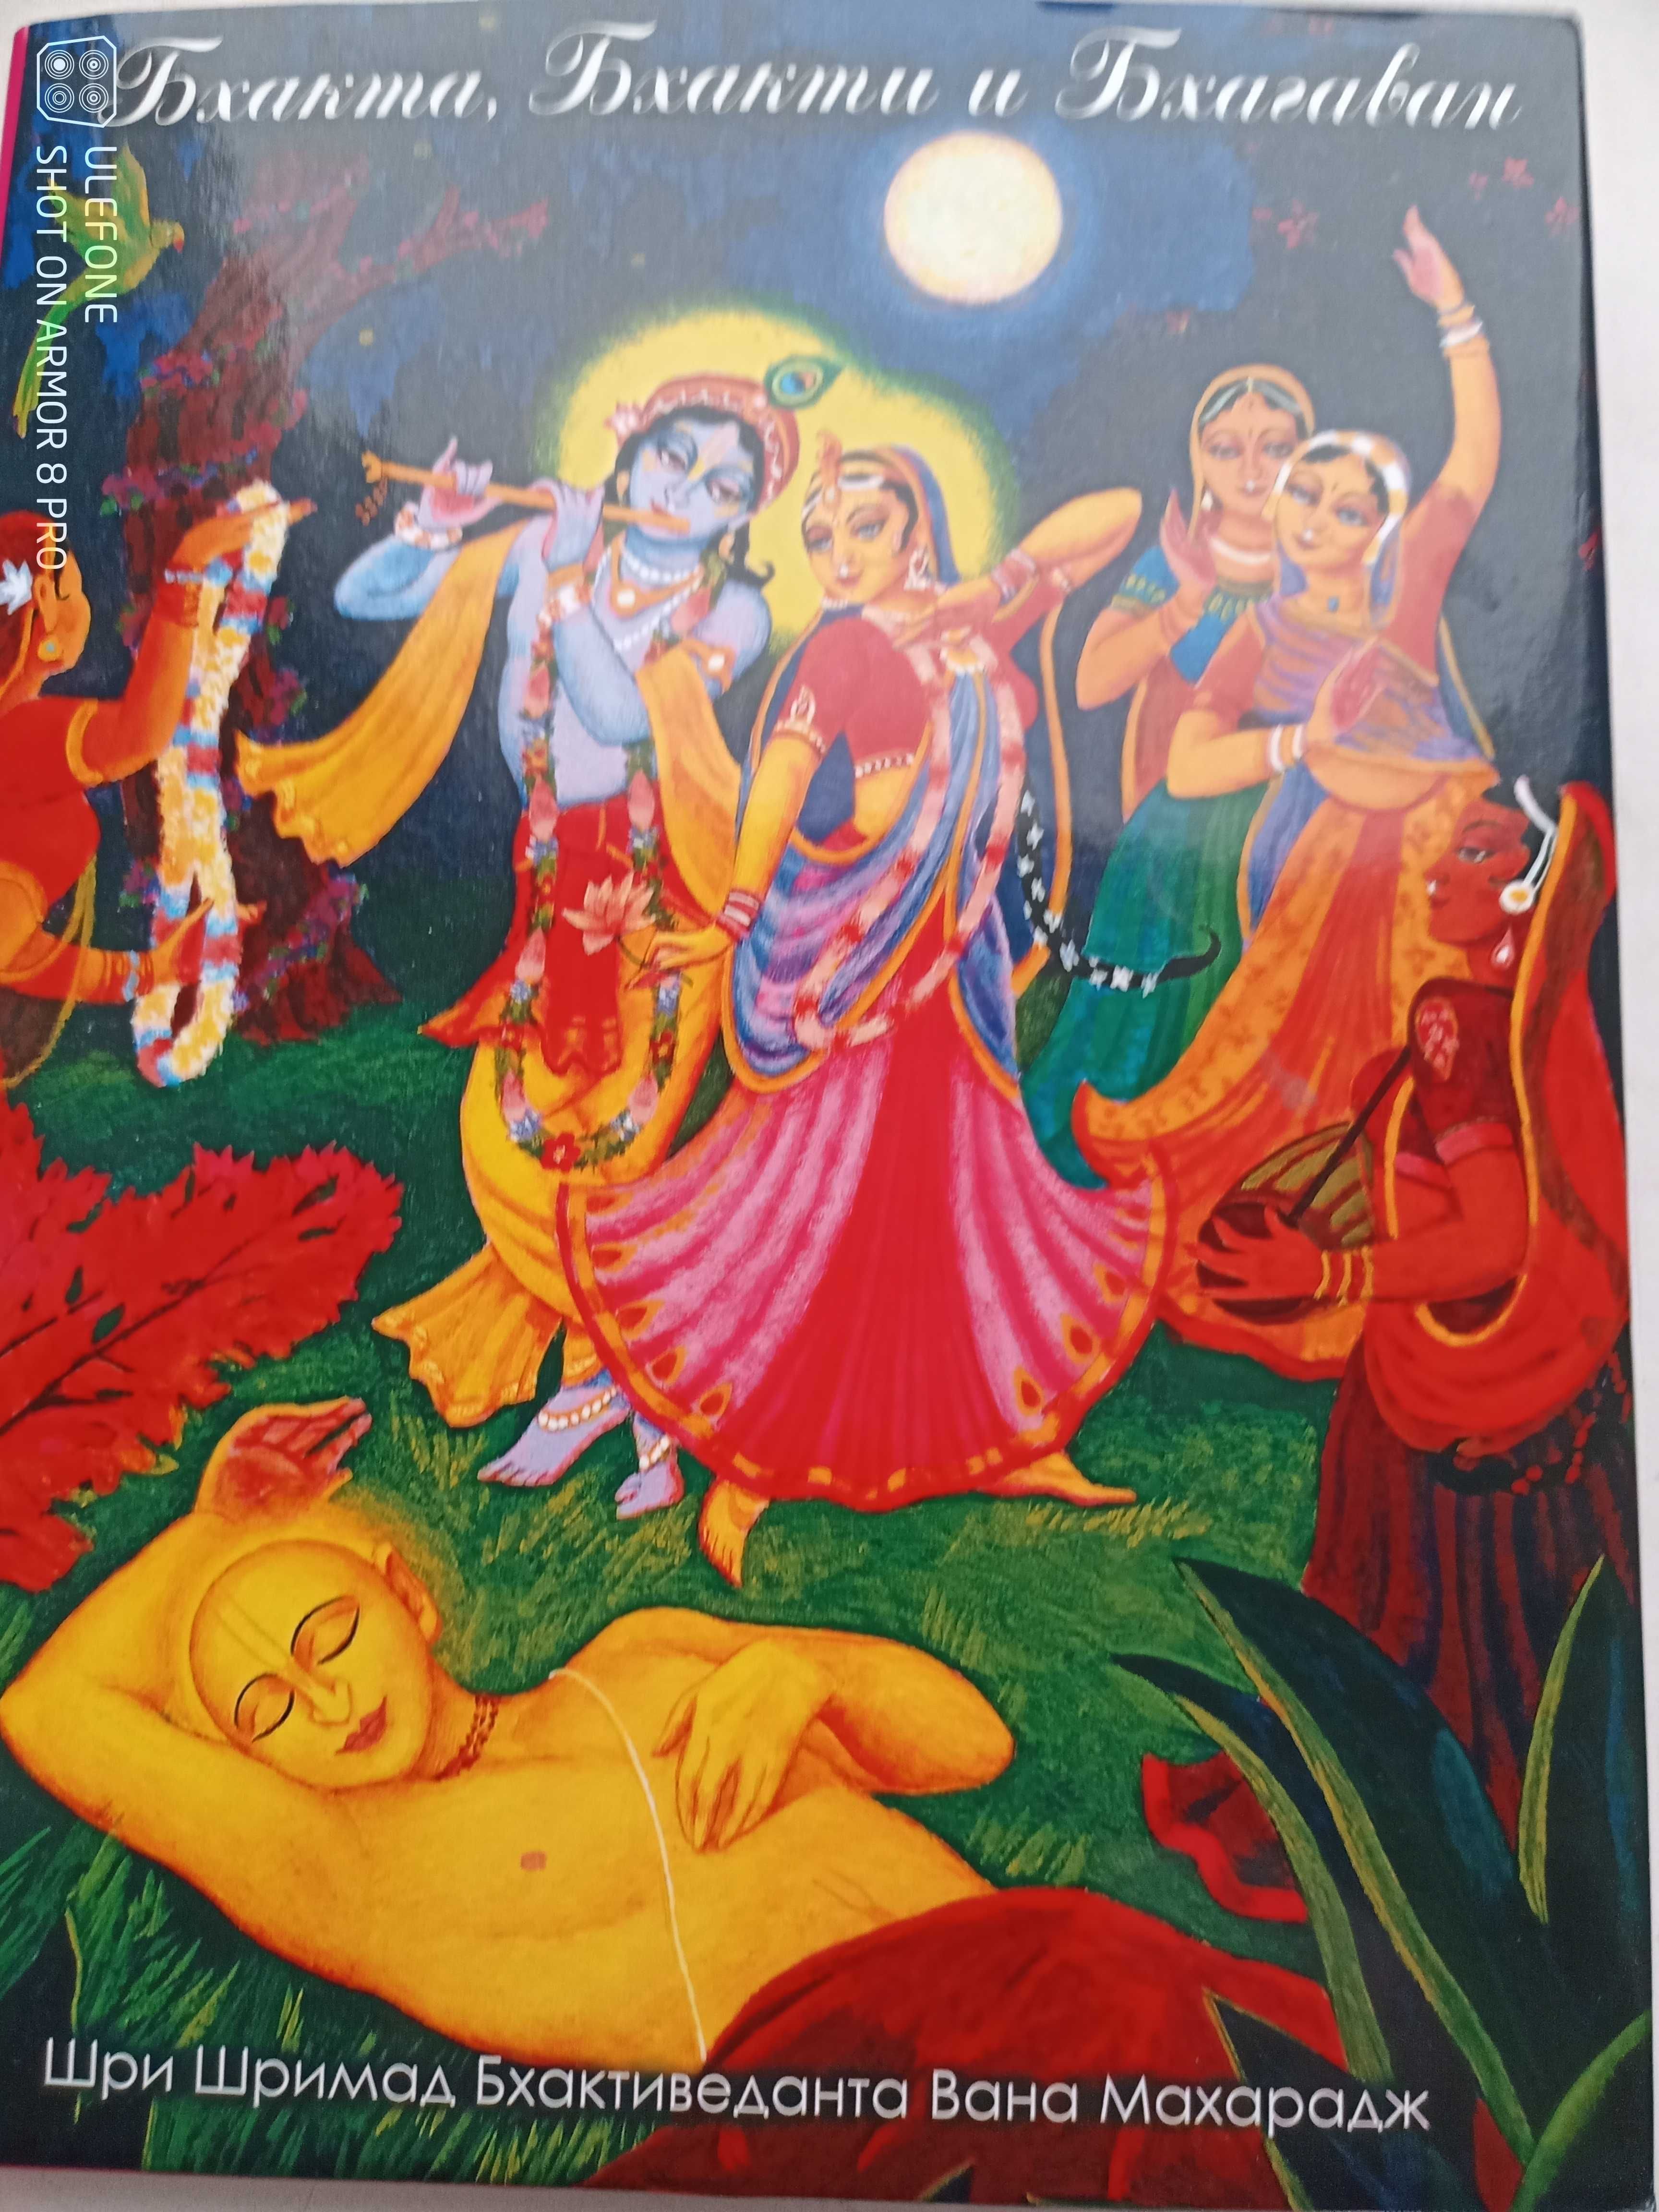 Искусство Садханы
Бхакта, Бхакти и Бхагаван 
Мудрецы Древней Индии